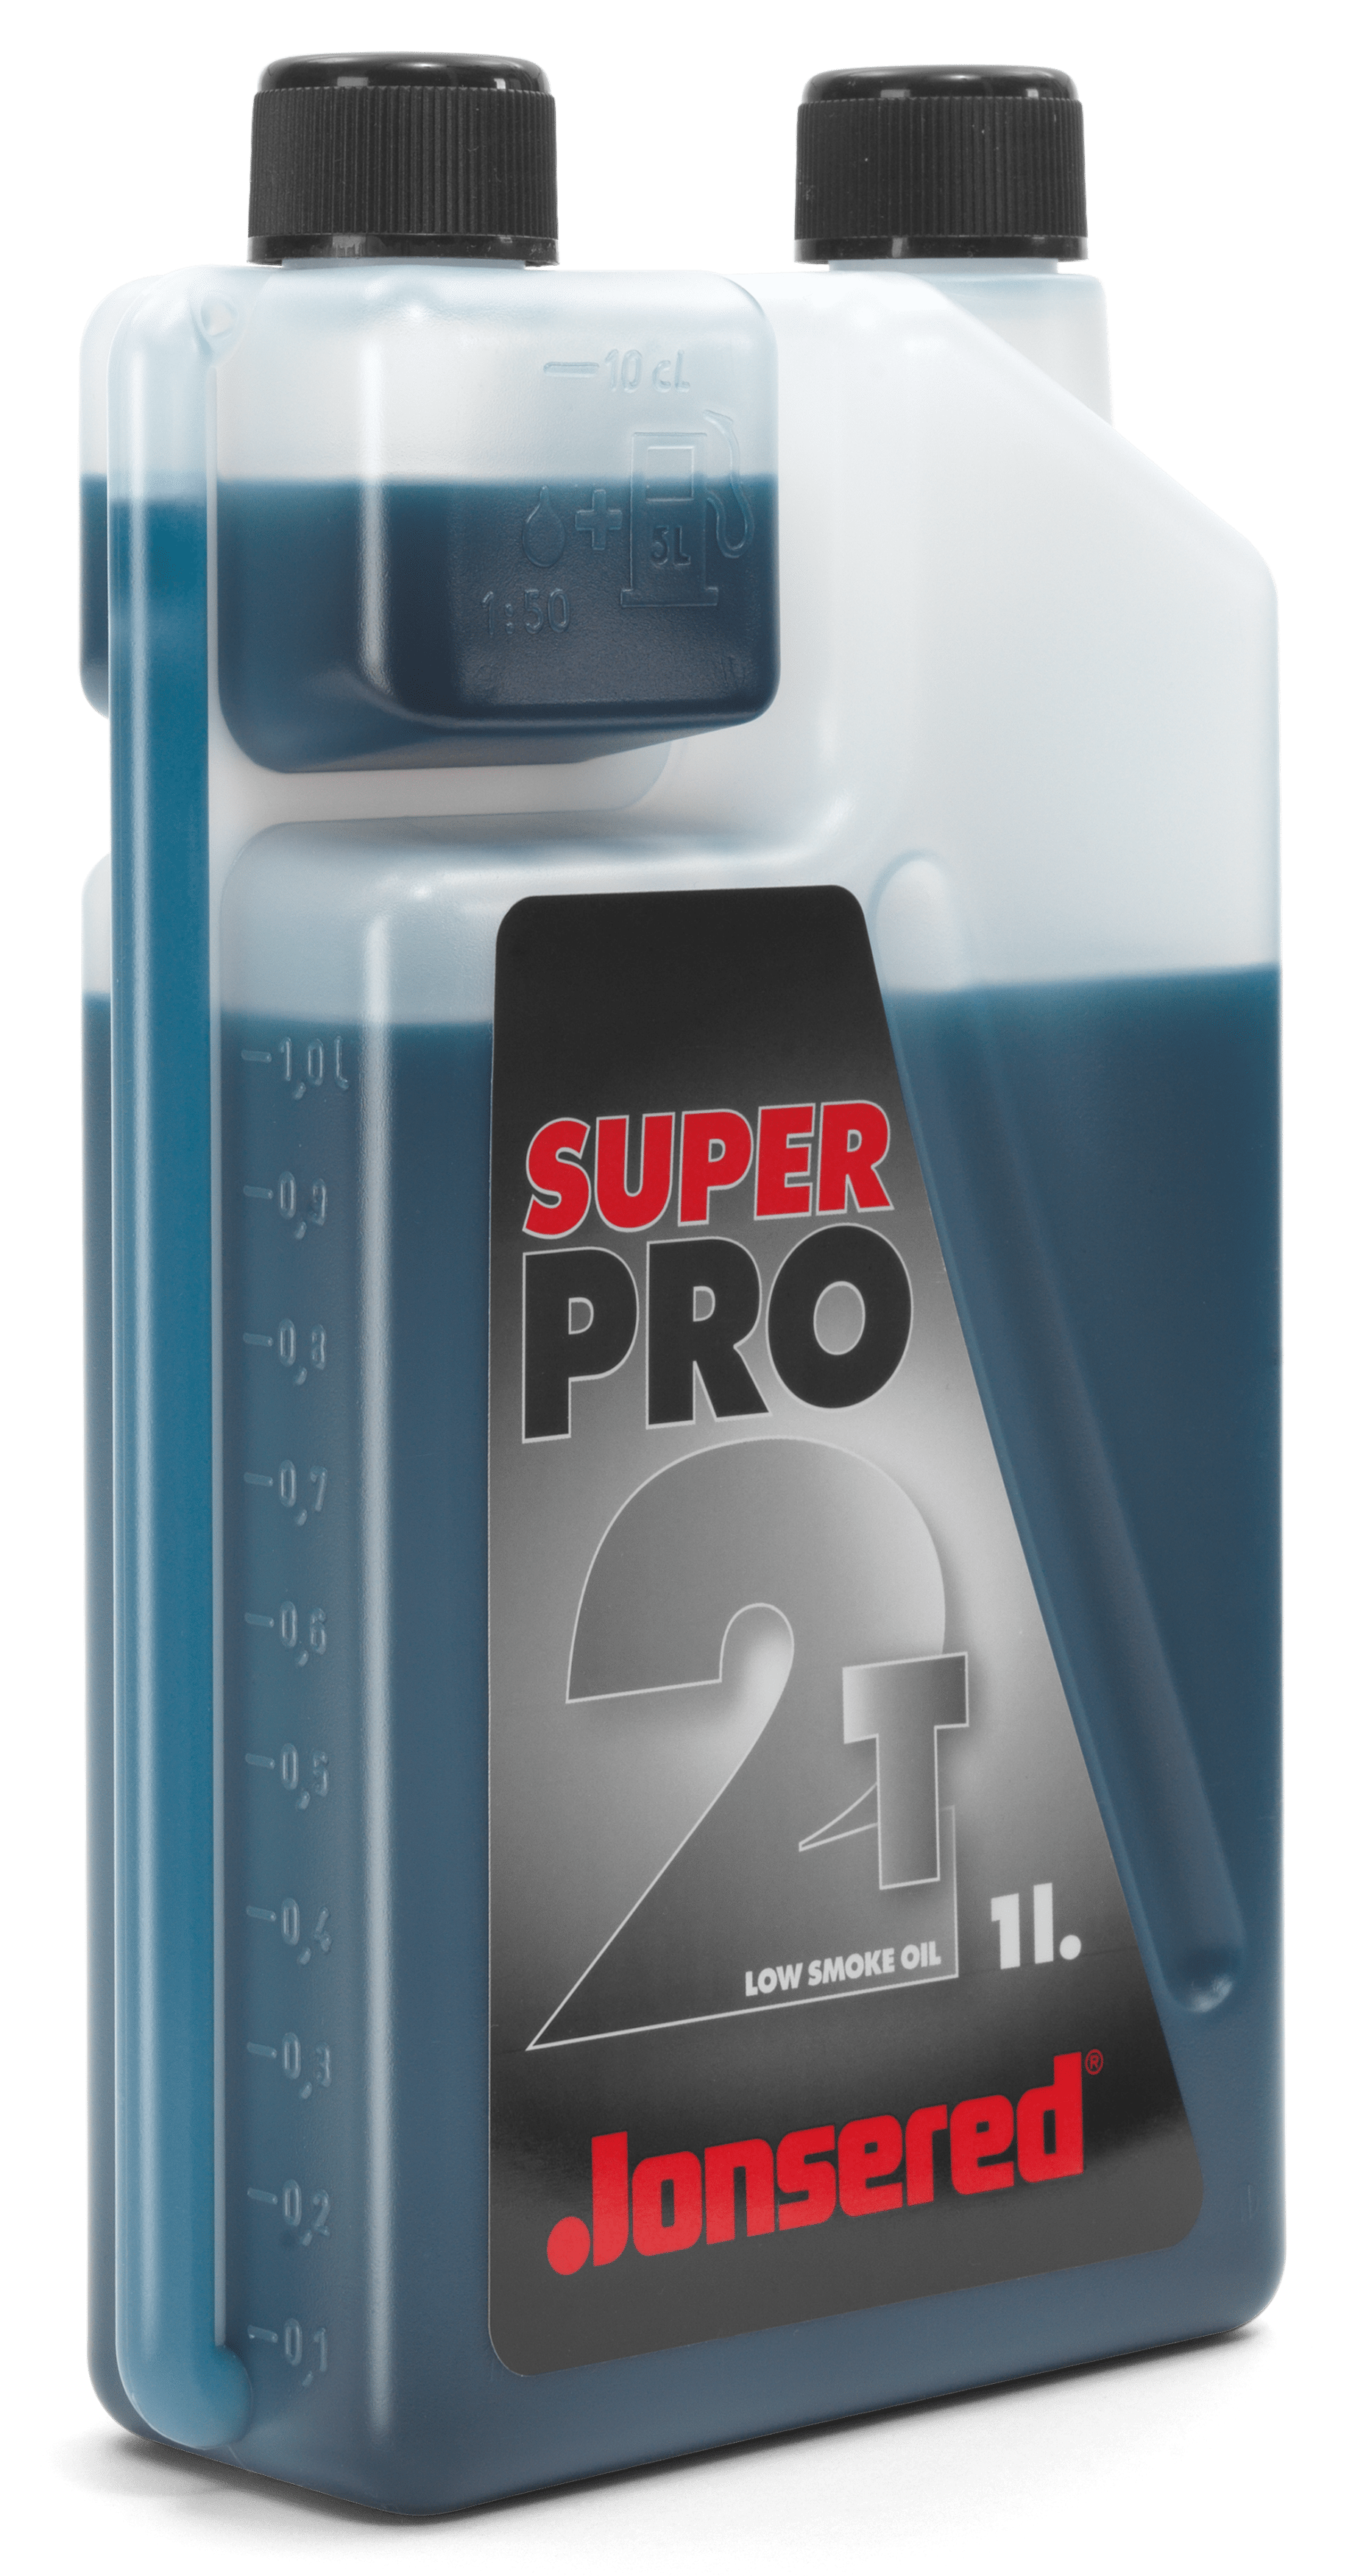 Super Pro, 2 stroke oil, 1 L